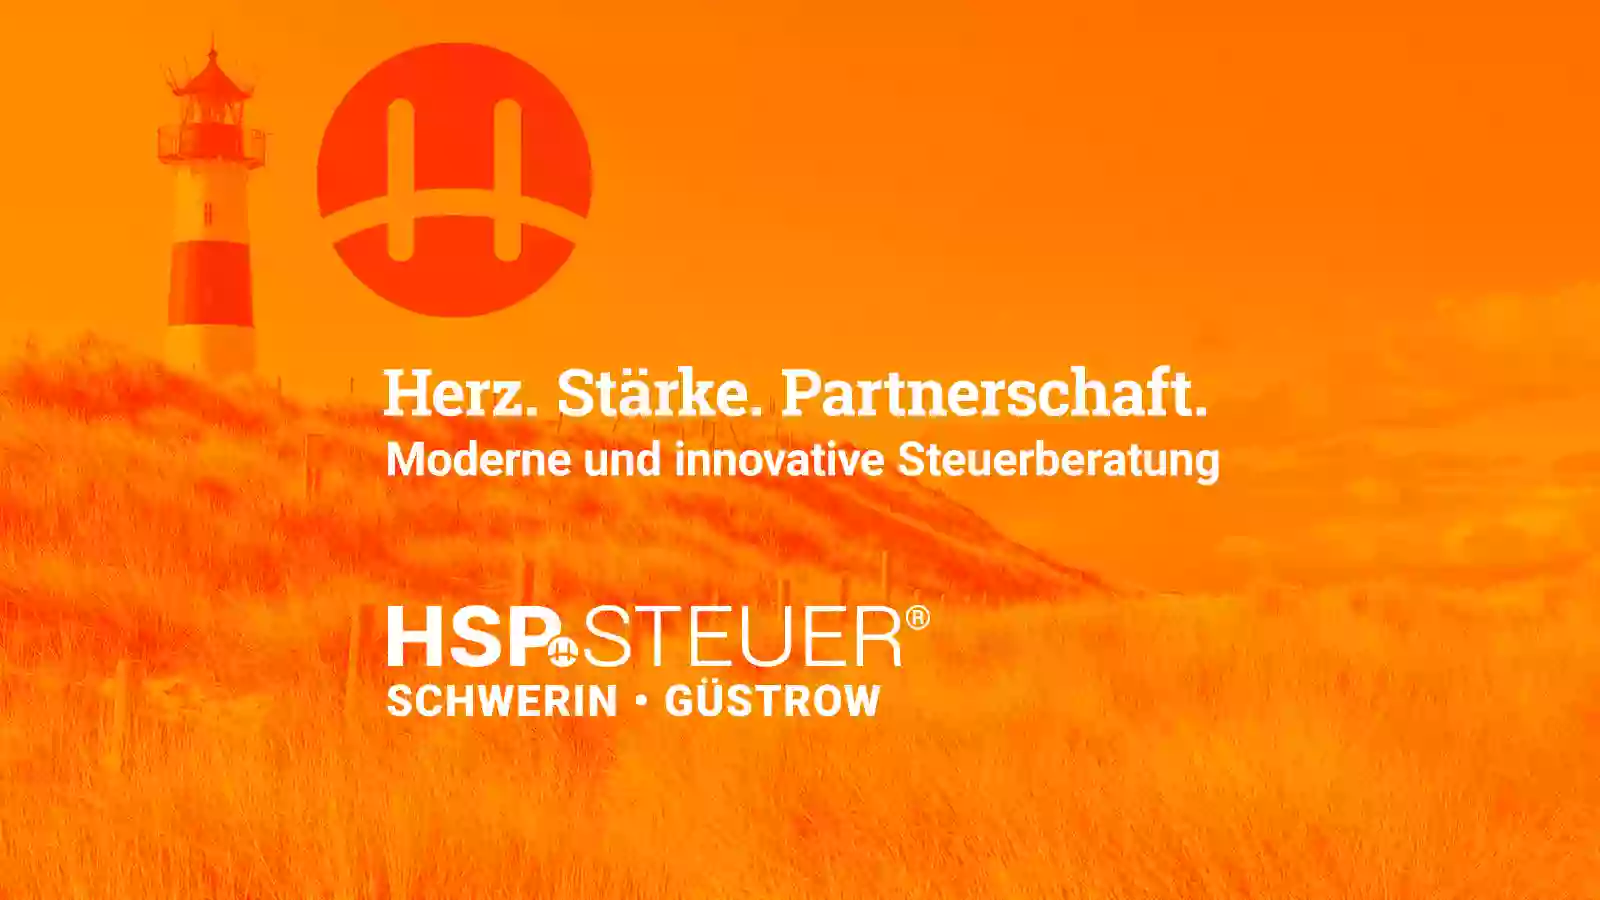 HSP STEUER in Mecklenburg Raddatz Wild & Leifeld Steuerberatungsgesellschaft mbH